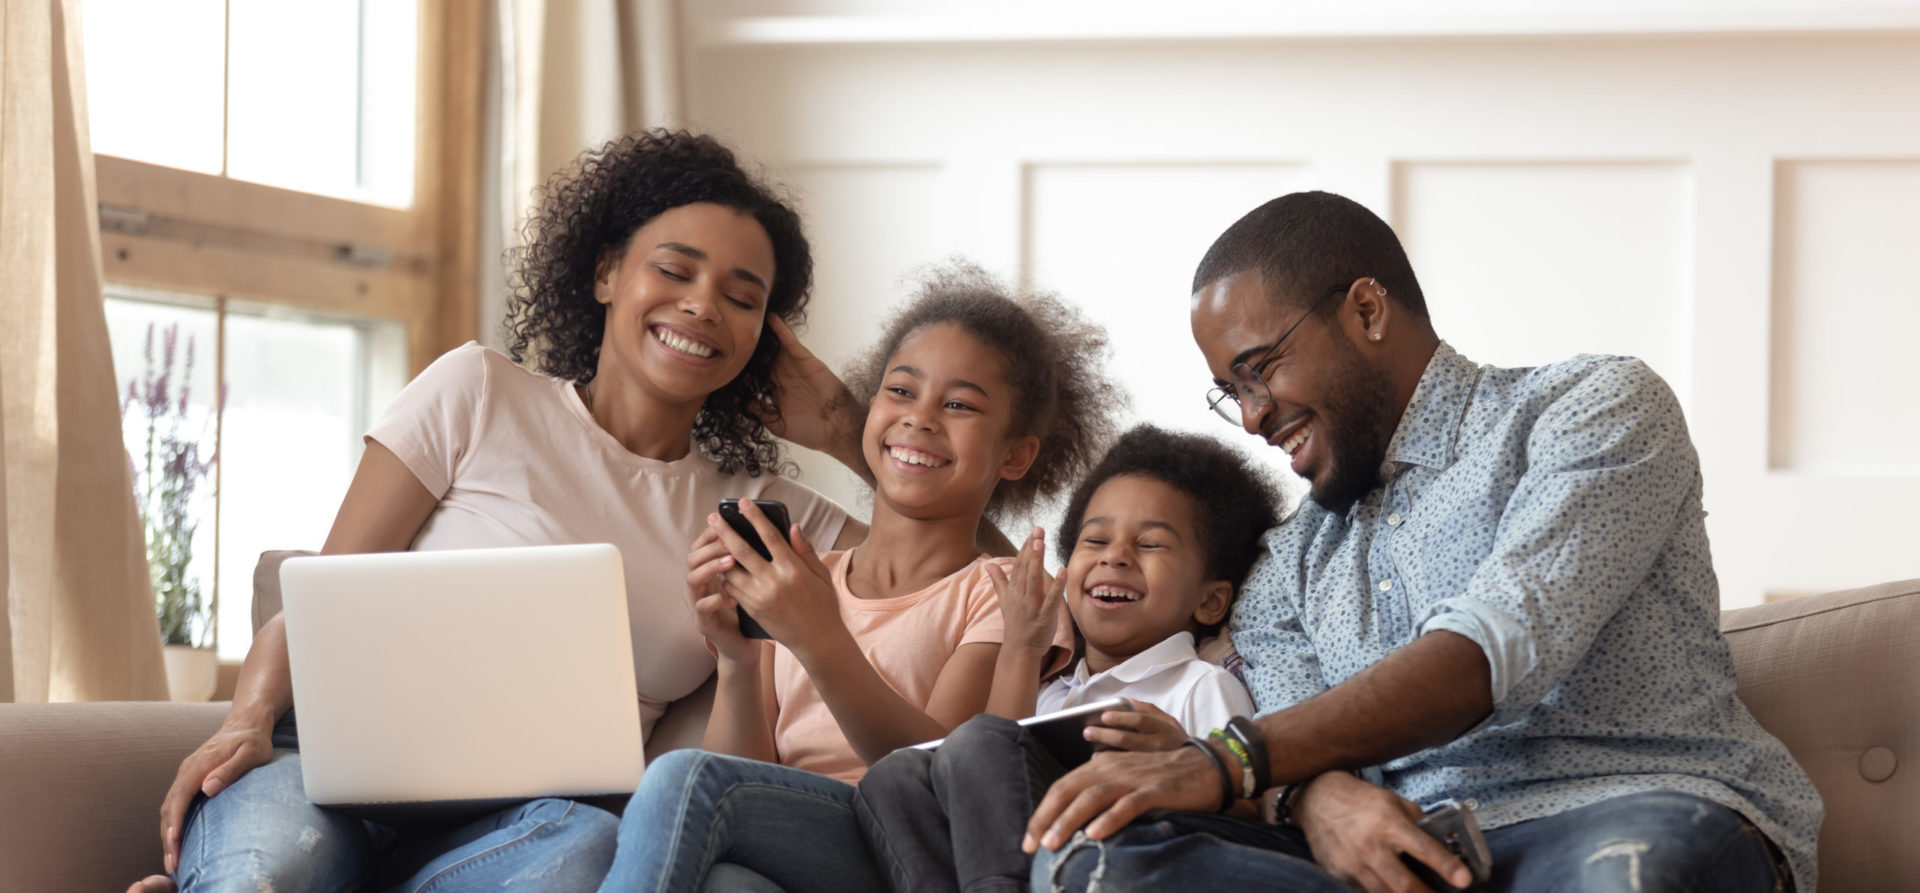 Famille heureuse sur un canapé qui utilise un ordinateur portable, une tablette et un téléphone intelligent.